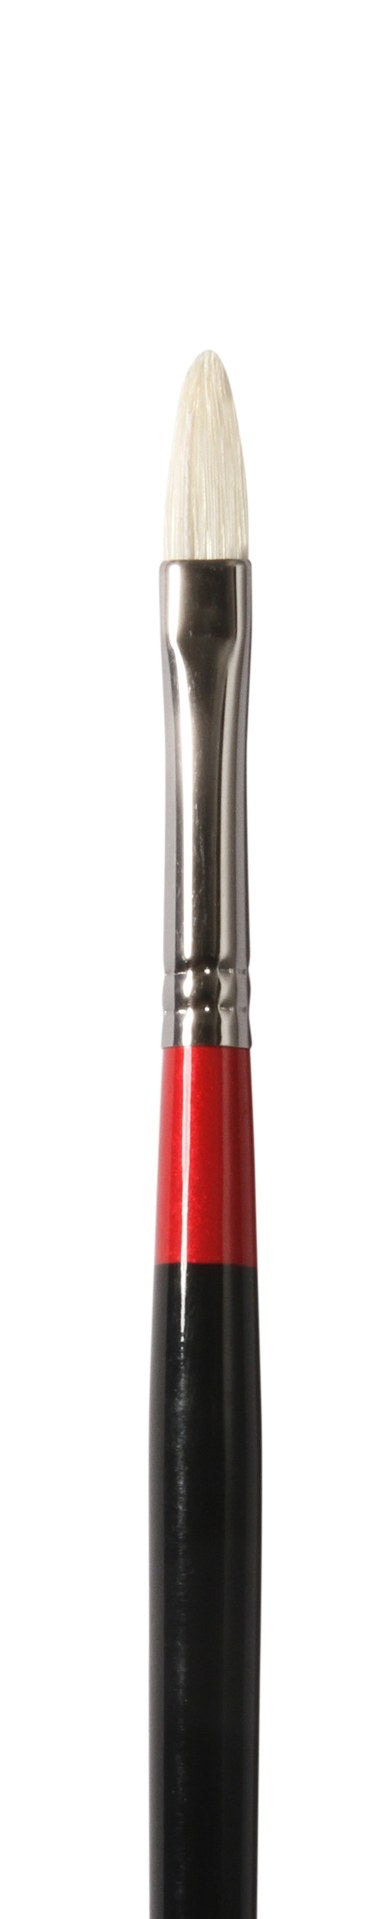 Daler Rowney Georgian S12 Filbert Brushes